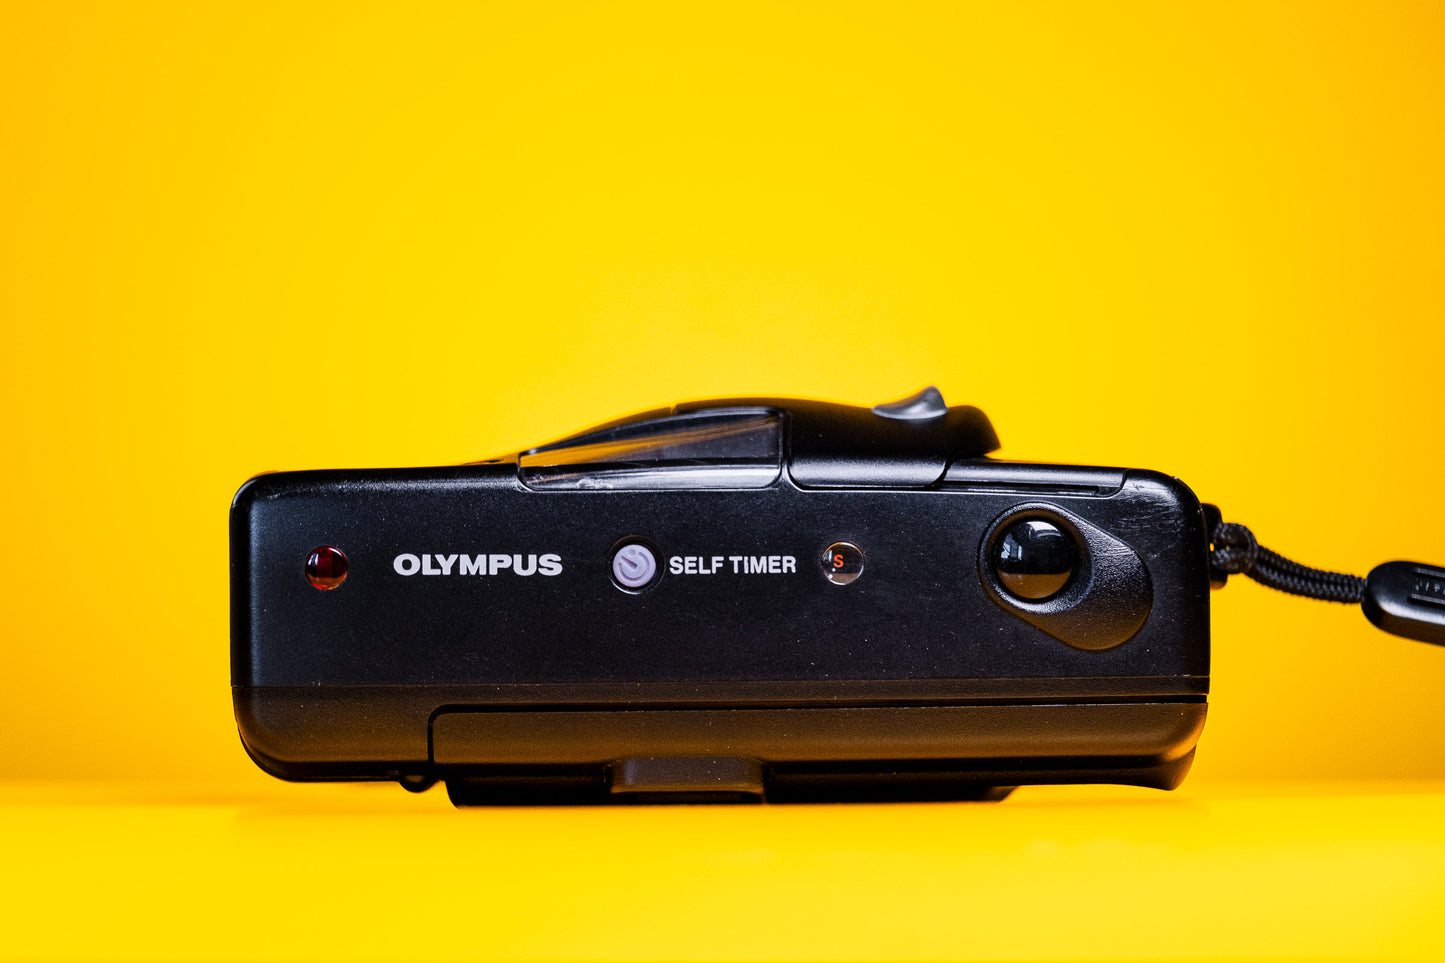 OLYMPUS AF 10 SUPER quartz date camera olympus vintage camera olympus point and shoot 35mm camera